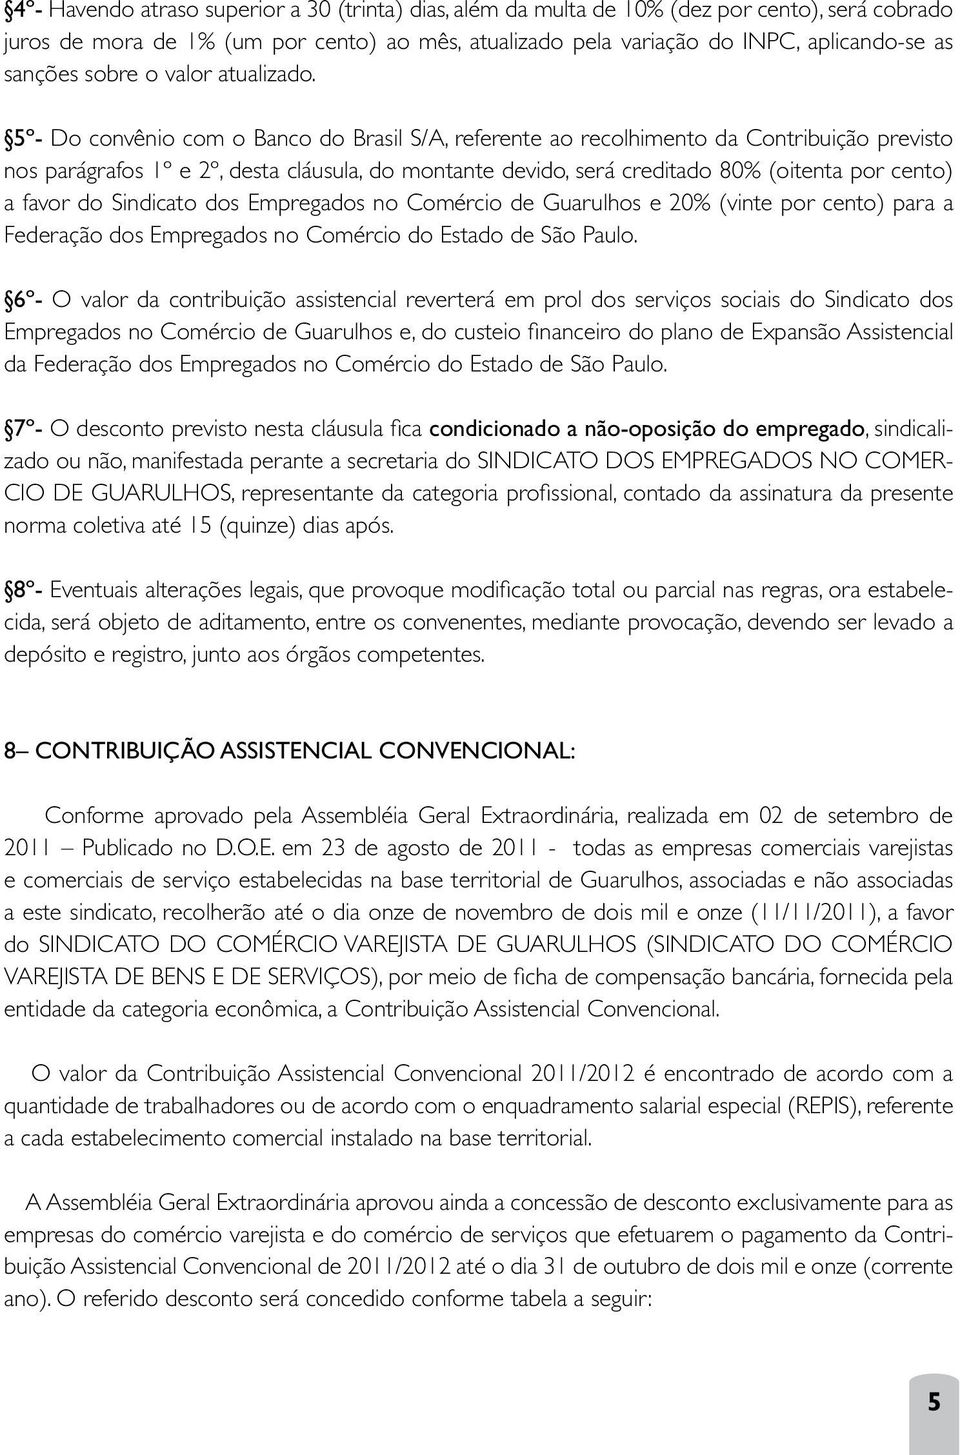 5º- Do convênio com o Banco do Brasil S/A, referente ao recolhimento da Contribuição previsto nos parágrafos 1º e 2º, desta cláusula, do montante devido, será creditado 80% (oitenta por cento) a